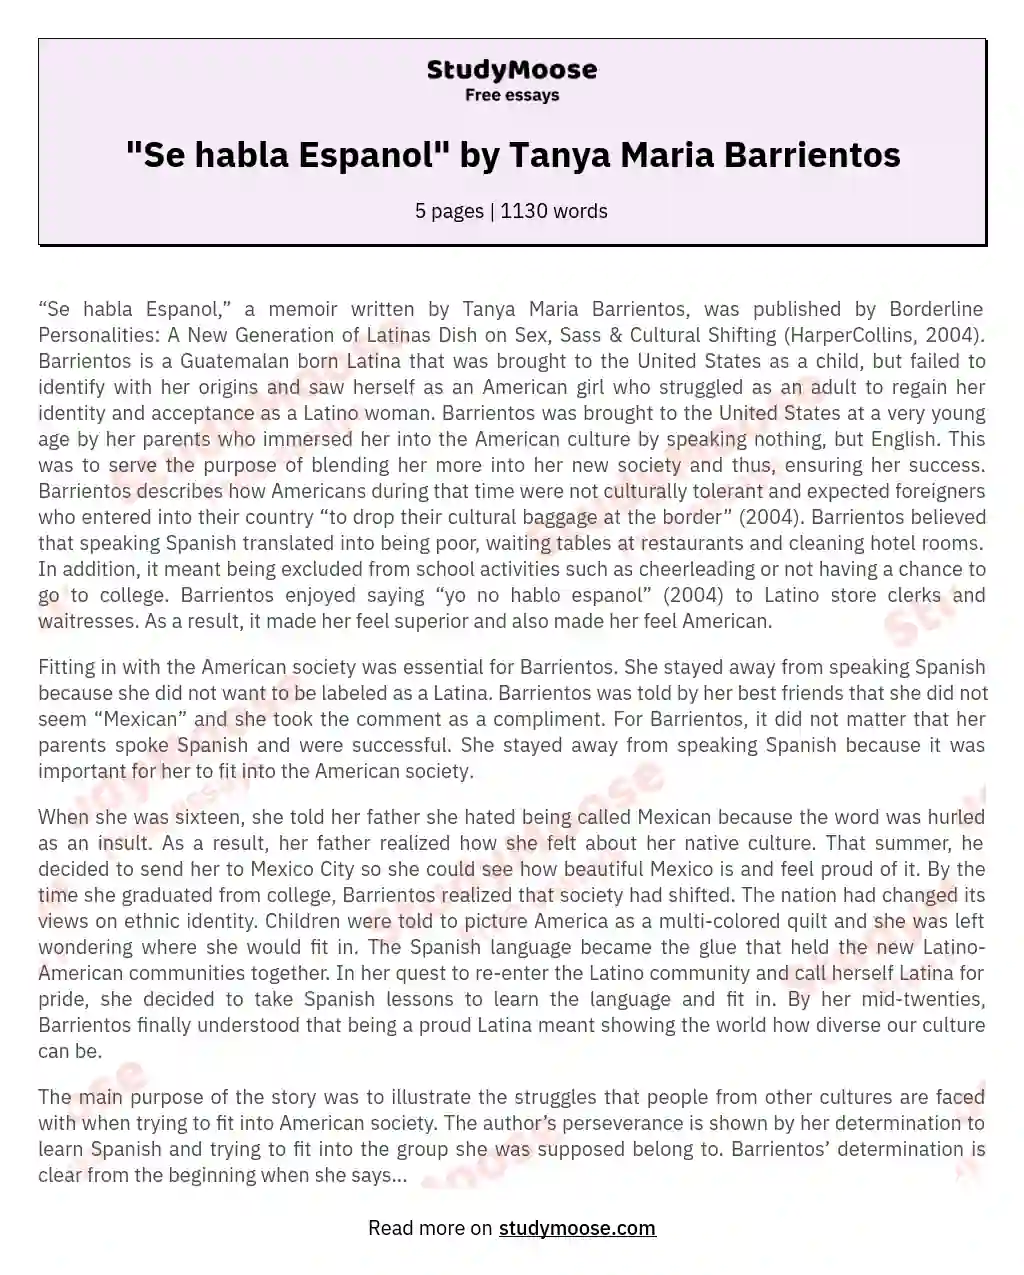 "Se habla Espanol" by Tanya Maria Barrientos essay